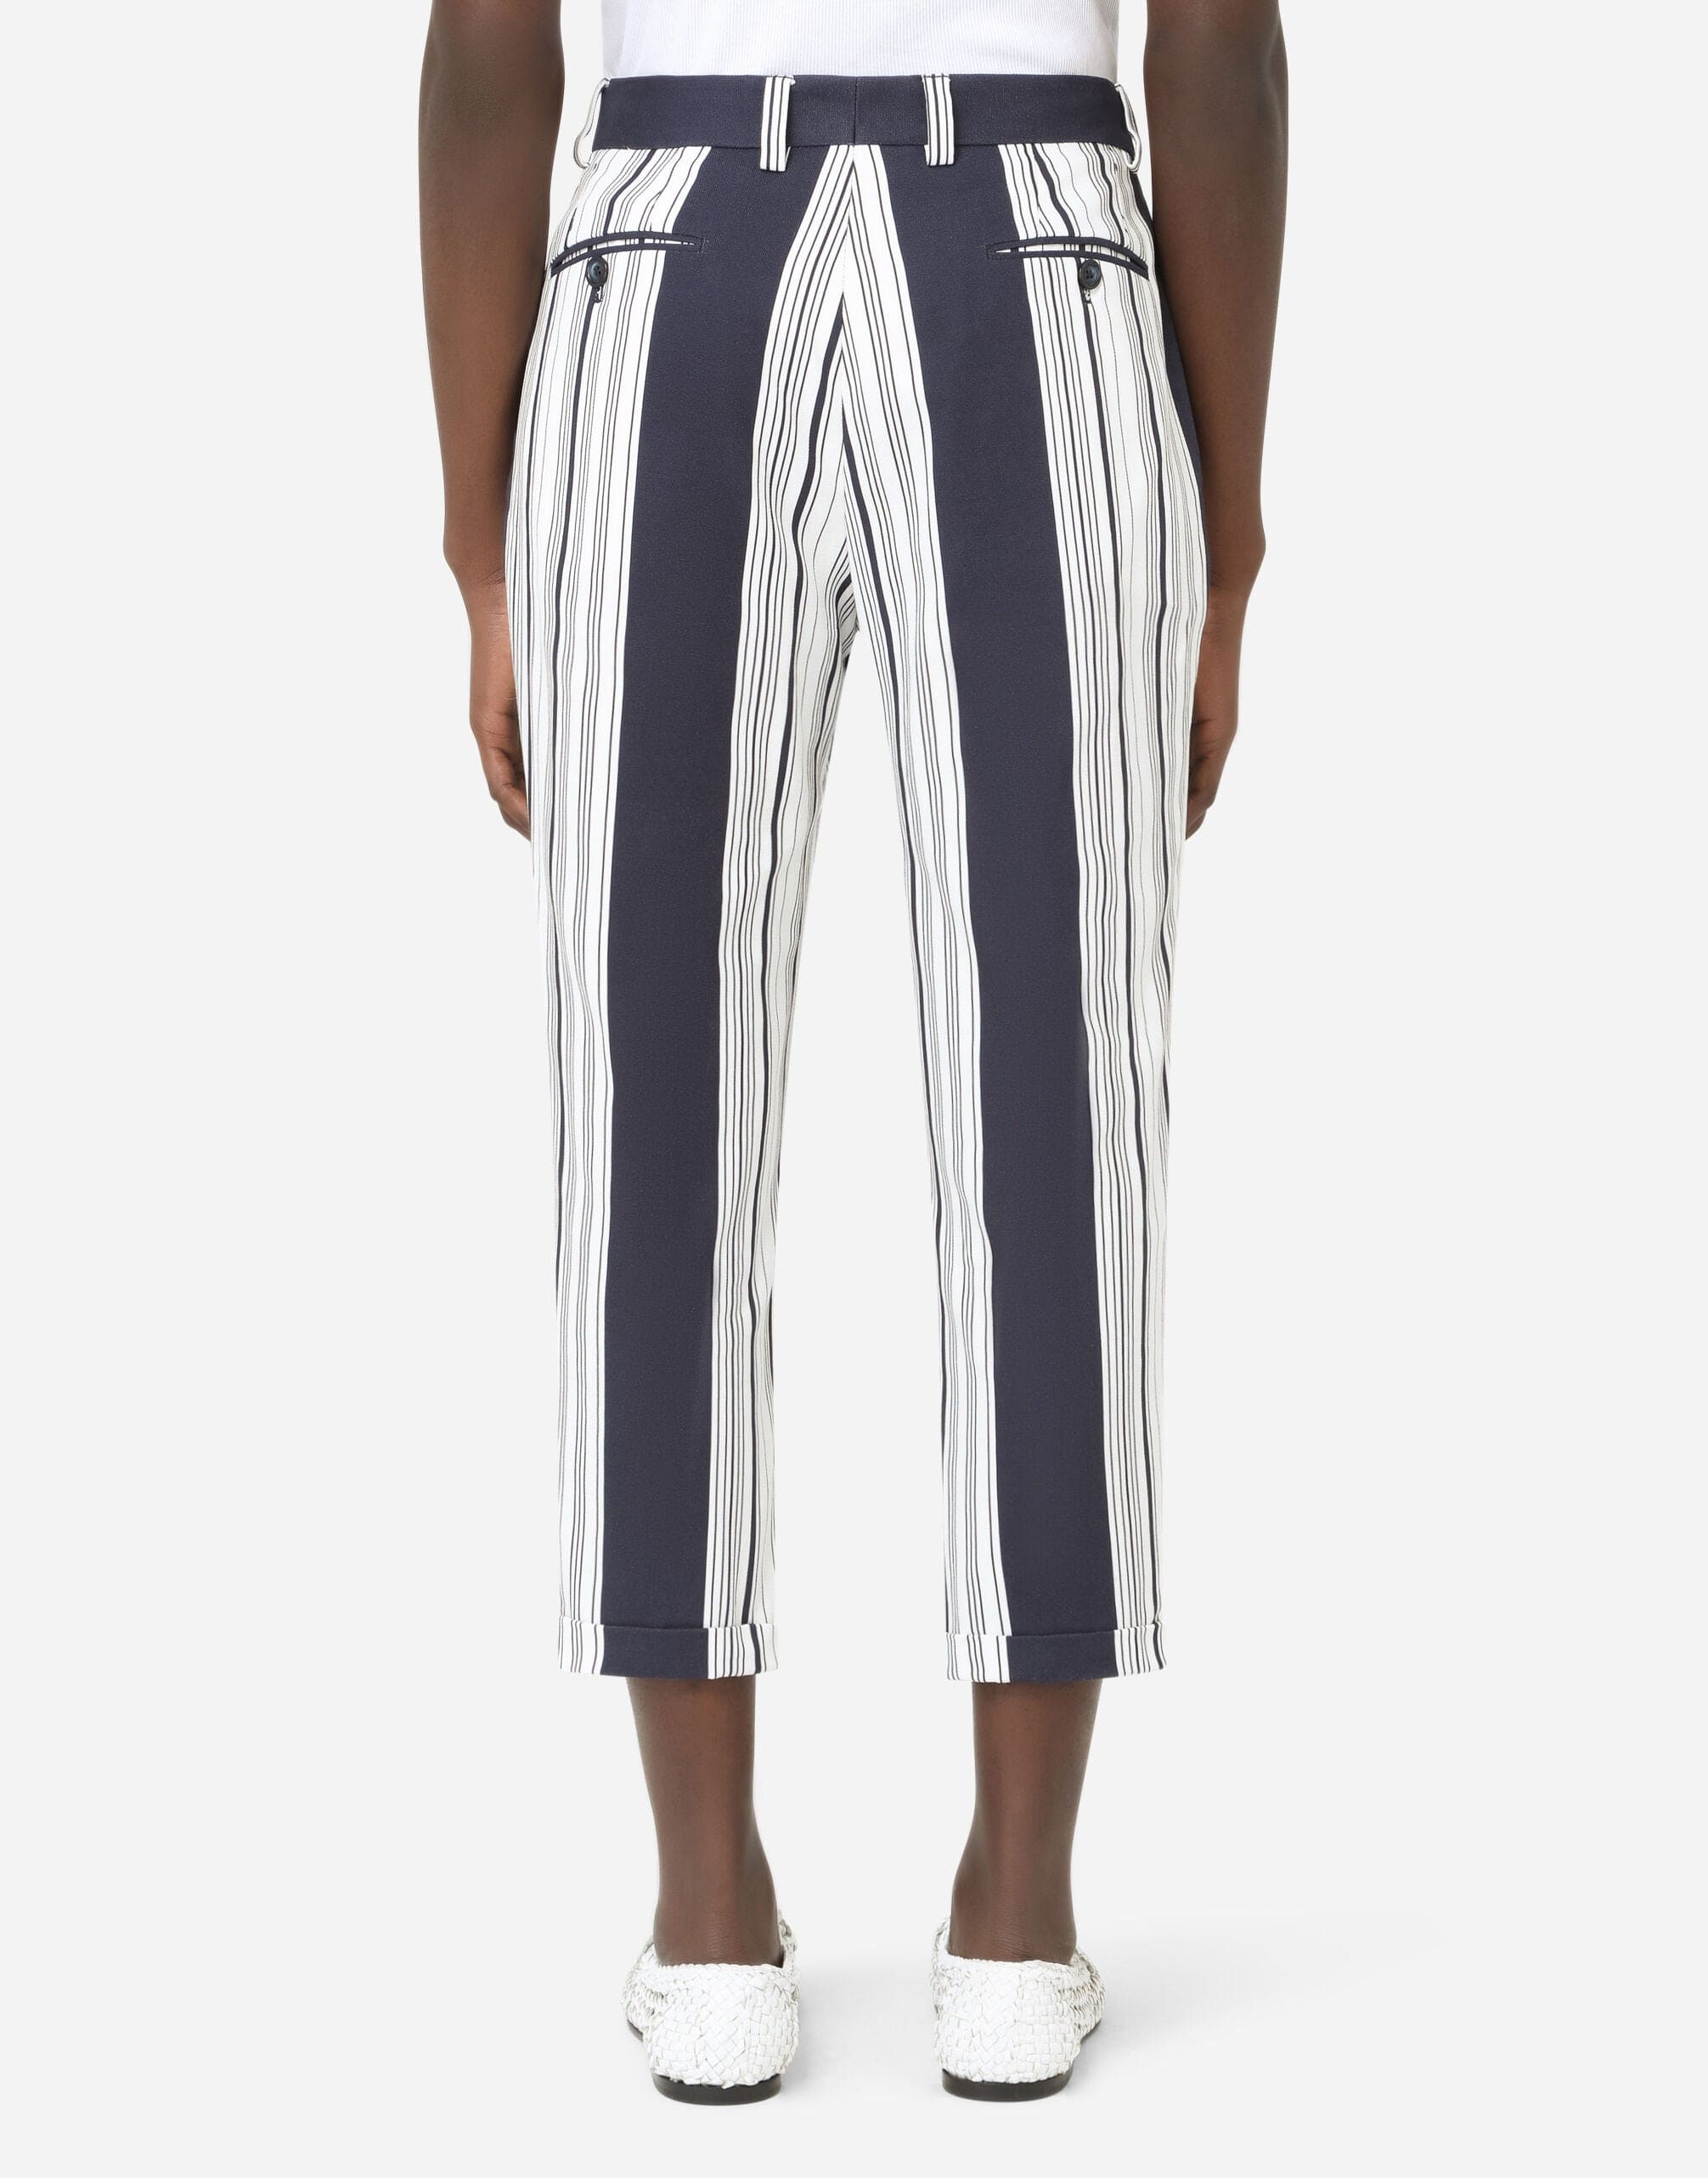 Dolce & Gabbana Striped-Print Cotton Pants